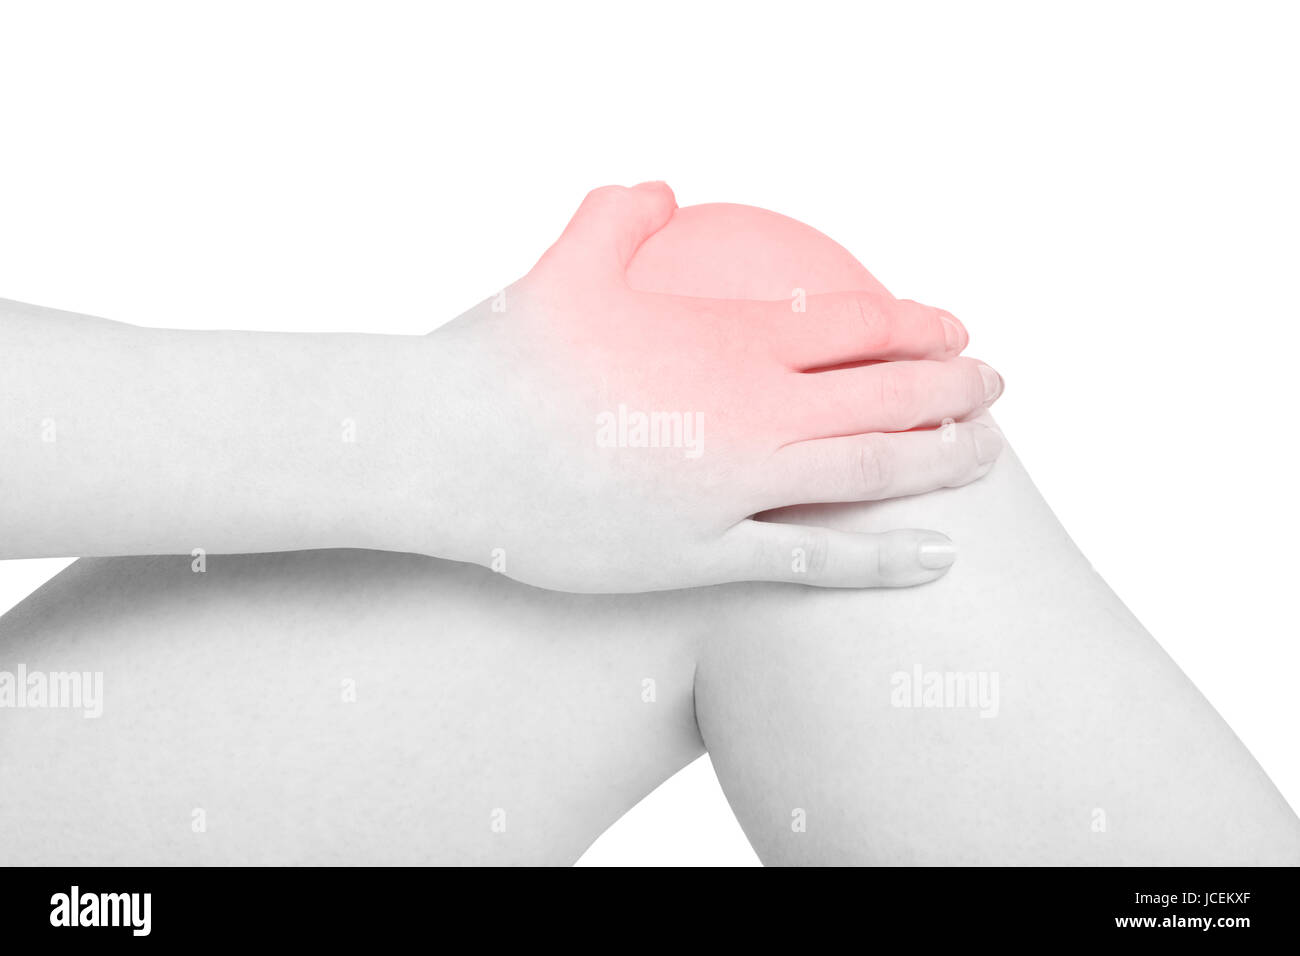 Junge Frau Hand Holding schmerzhafte, rote Schmerzen Kniebereich isoliert auf weiss, Clipping-Pfad Stockfoto